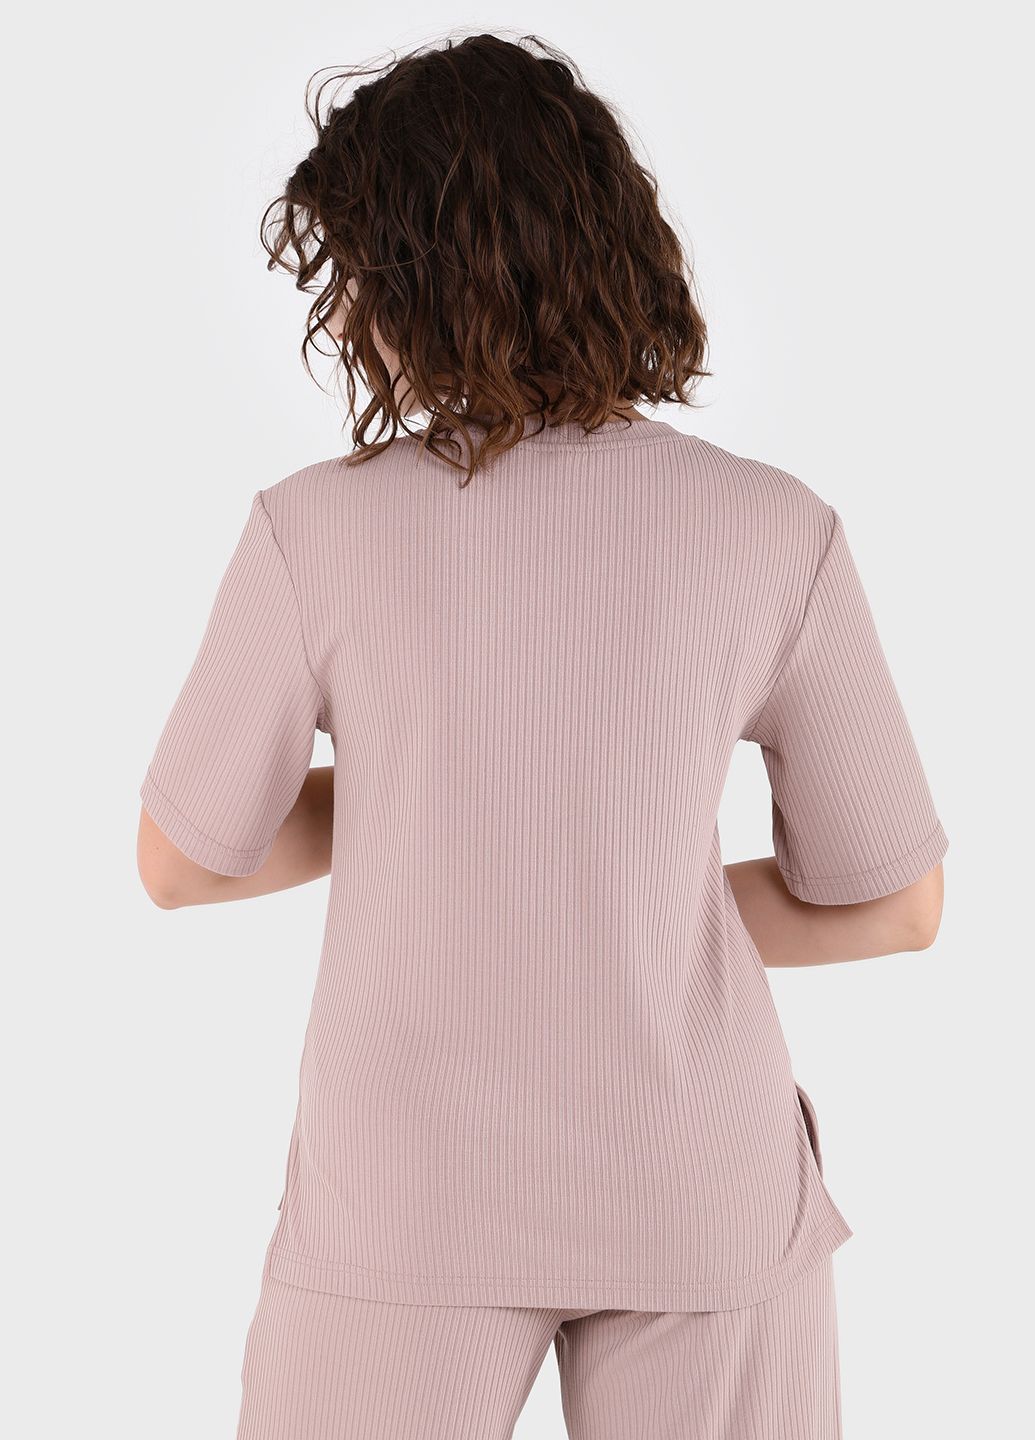 Купить Легкая футболка женская в рубчик Merlini Корунья 800000023 - Бежевый, 42-44 в интернет-магазине